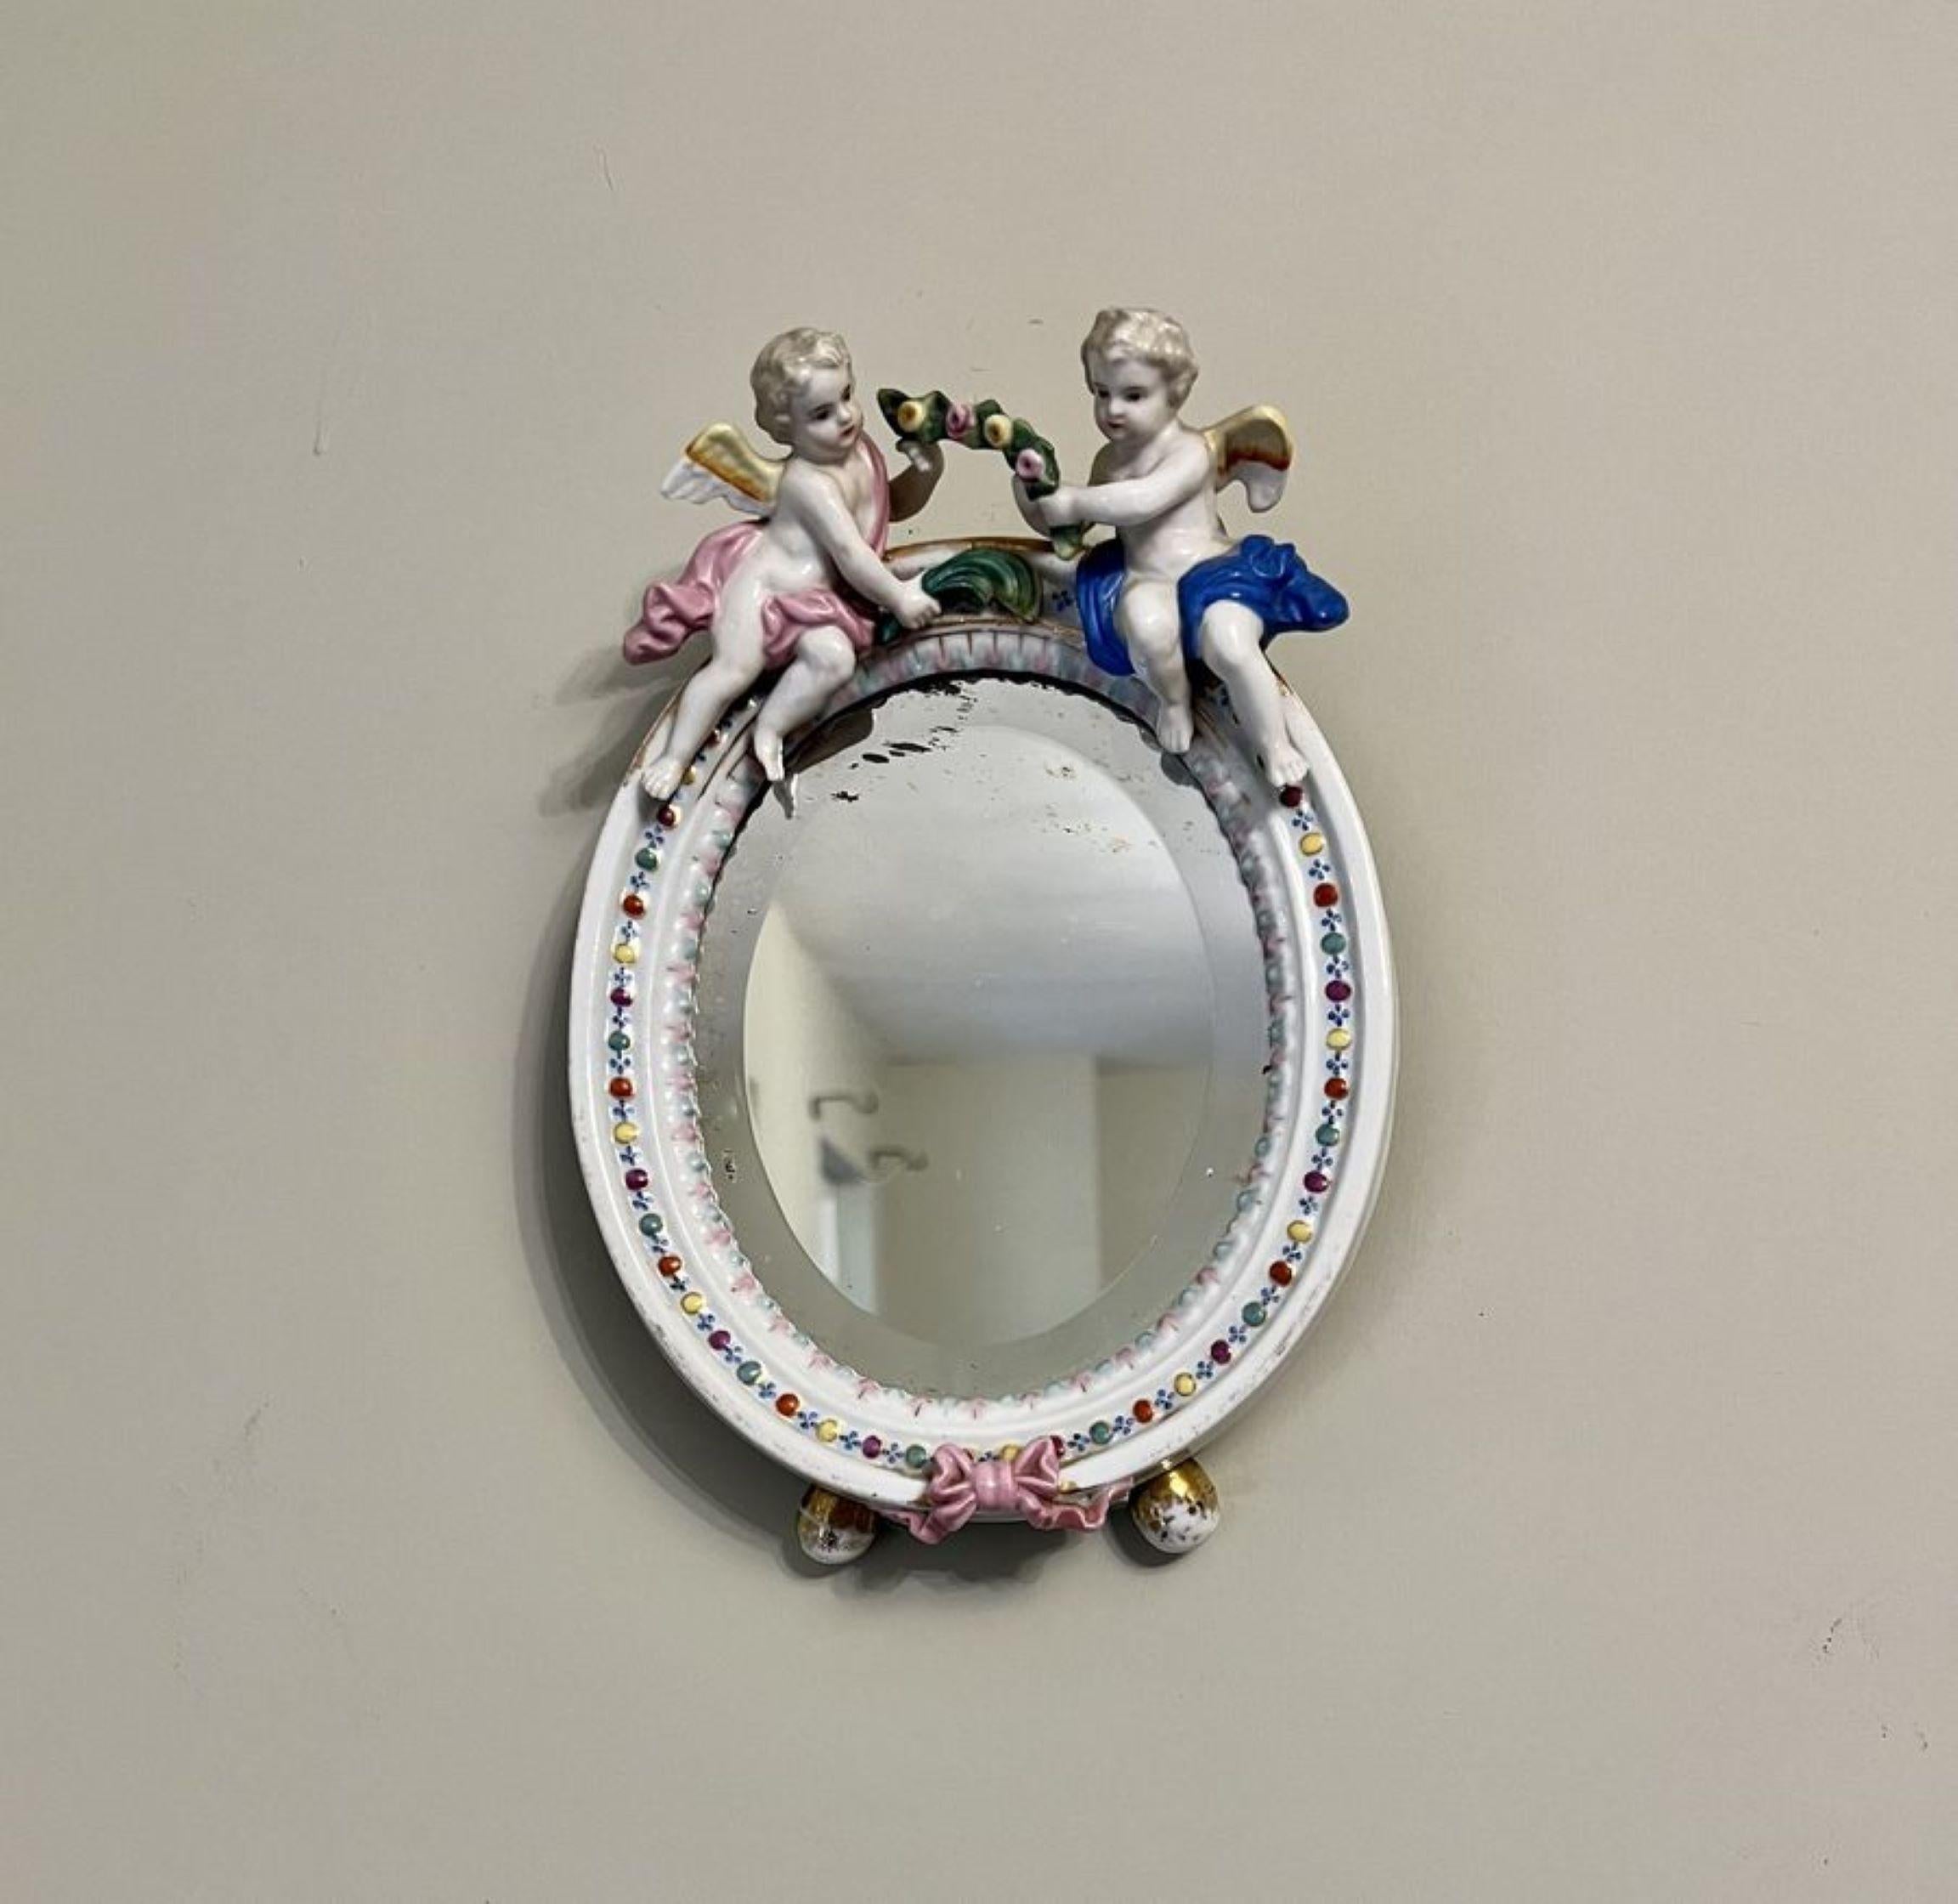 Antike viktorianische Qualität kontinentalen Porzellan ovalen Spiegel mit einer Qualität kontinentalen Porzellan Spiegel mit zwei Putten auf der Oberseite und rosa Band an der Unterseite in wunderbare Hand gemalt blau, rosa, gelb, grün, orange, weiß